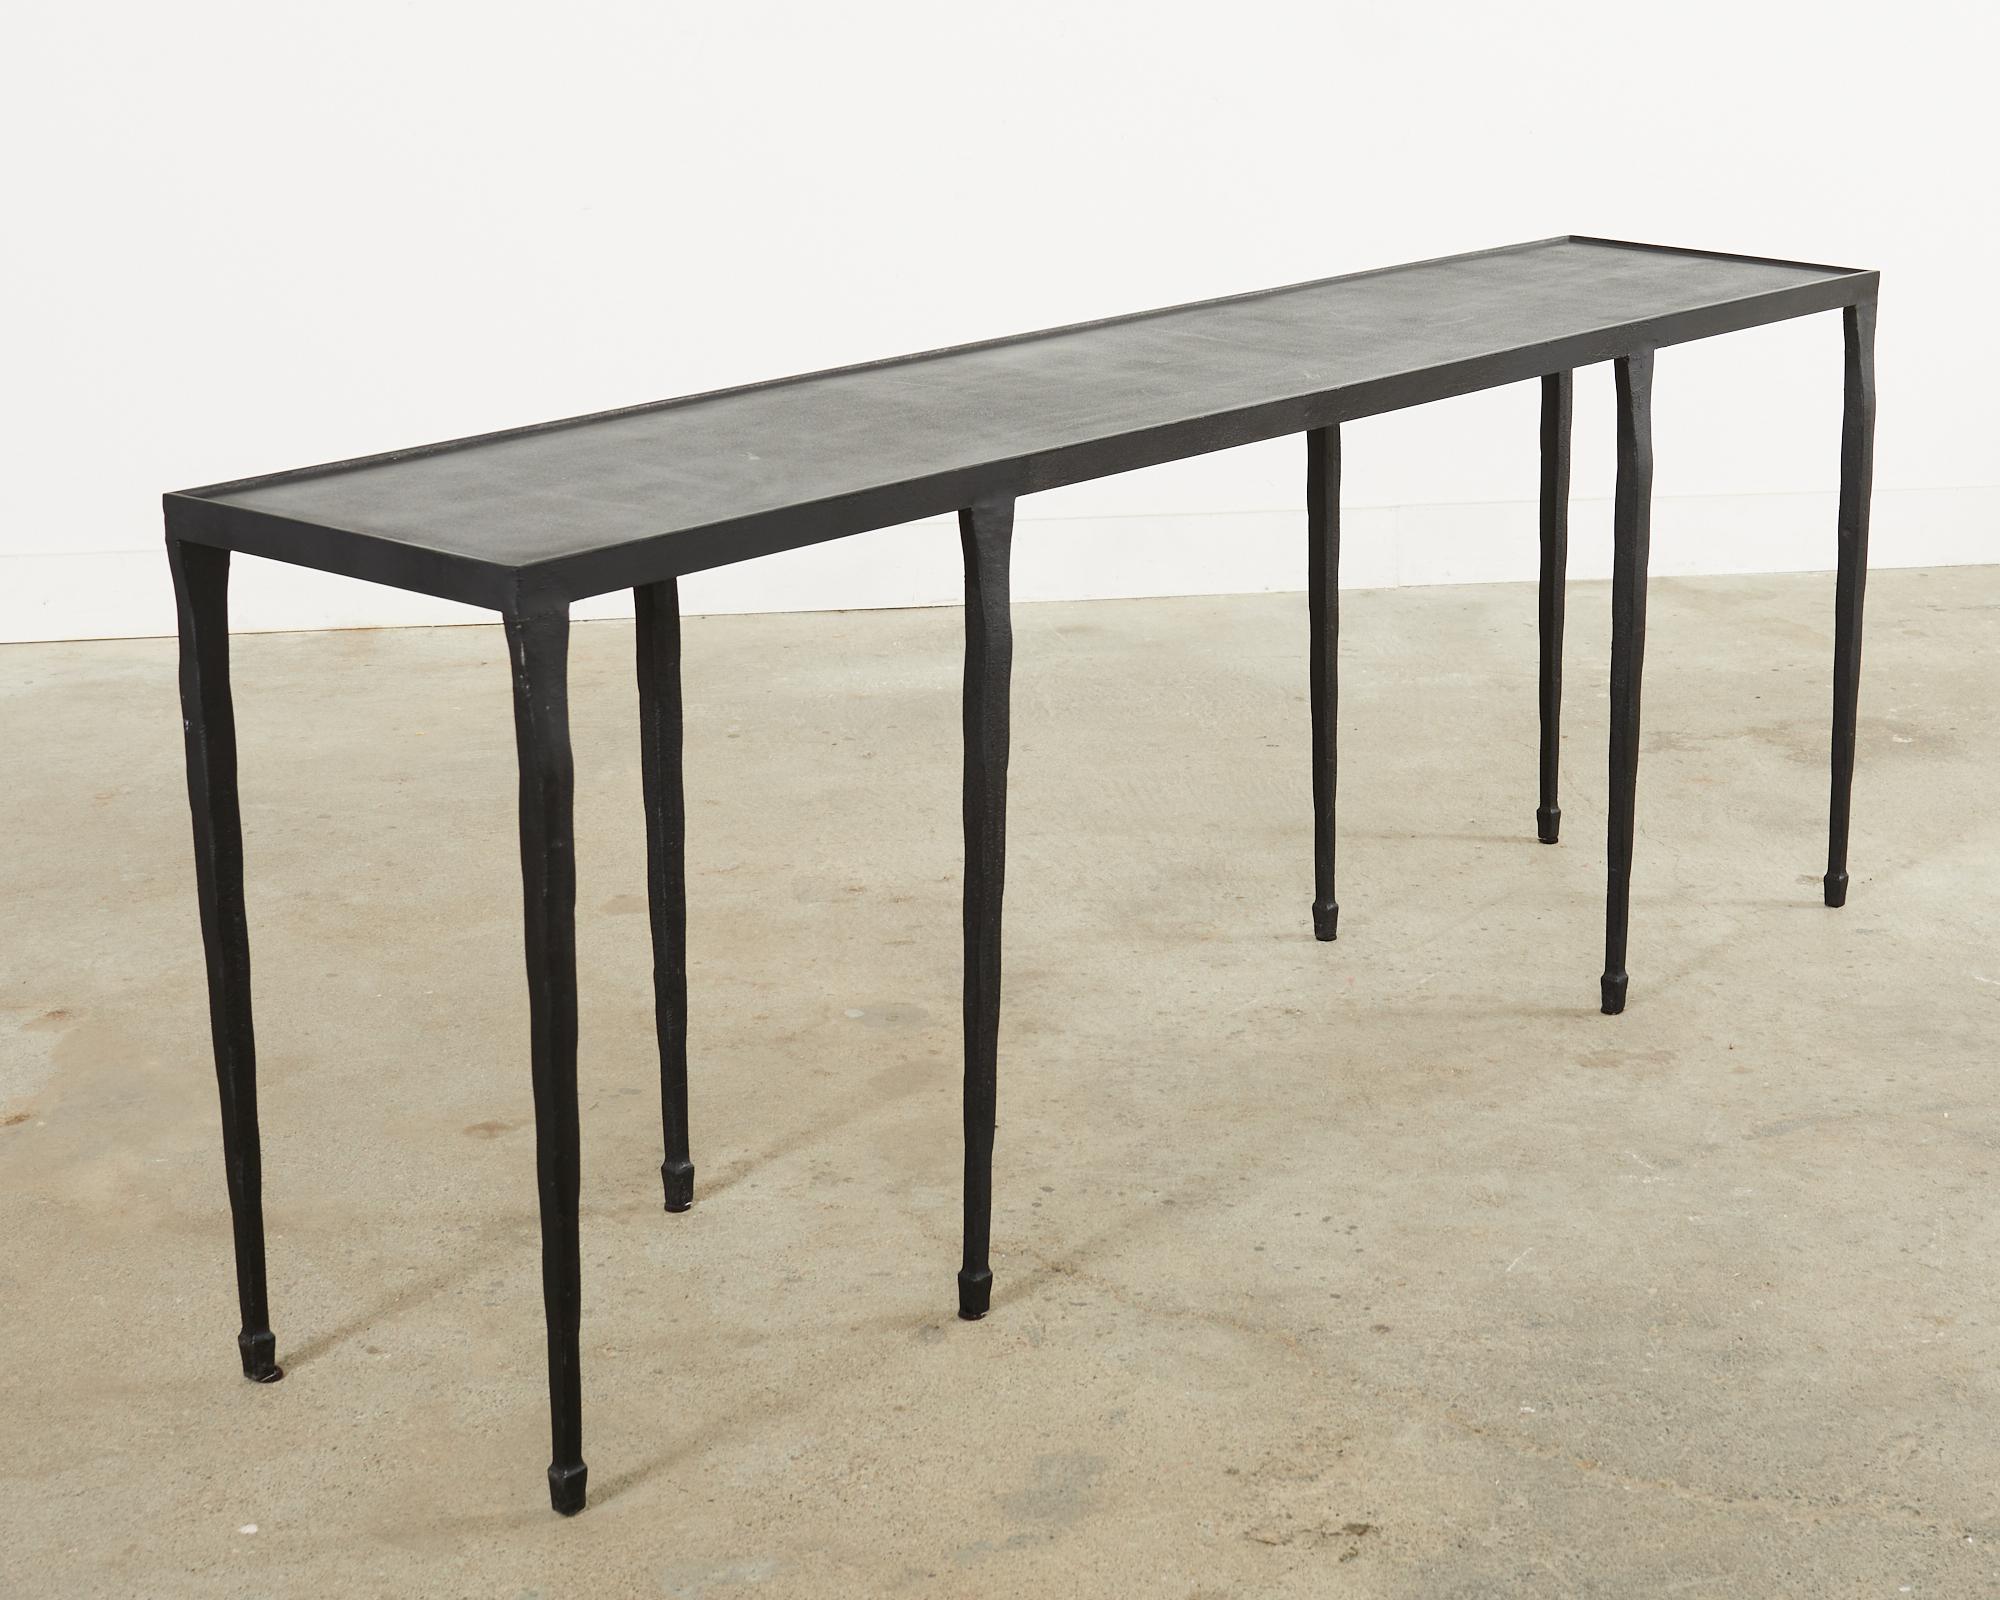 Moulage Table console d'inspiration Giacometti en fonte martelée noire